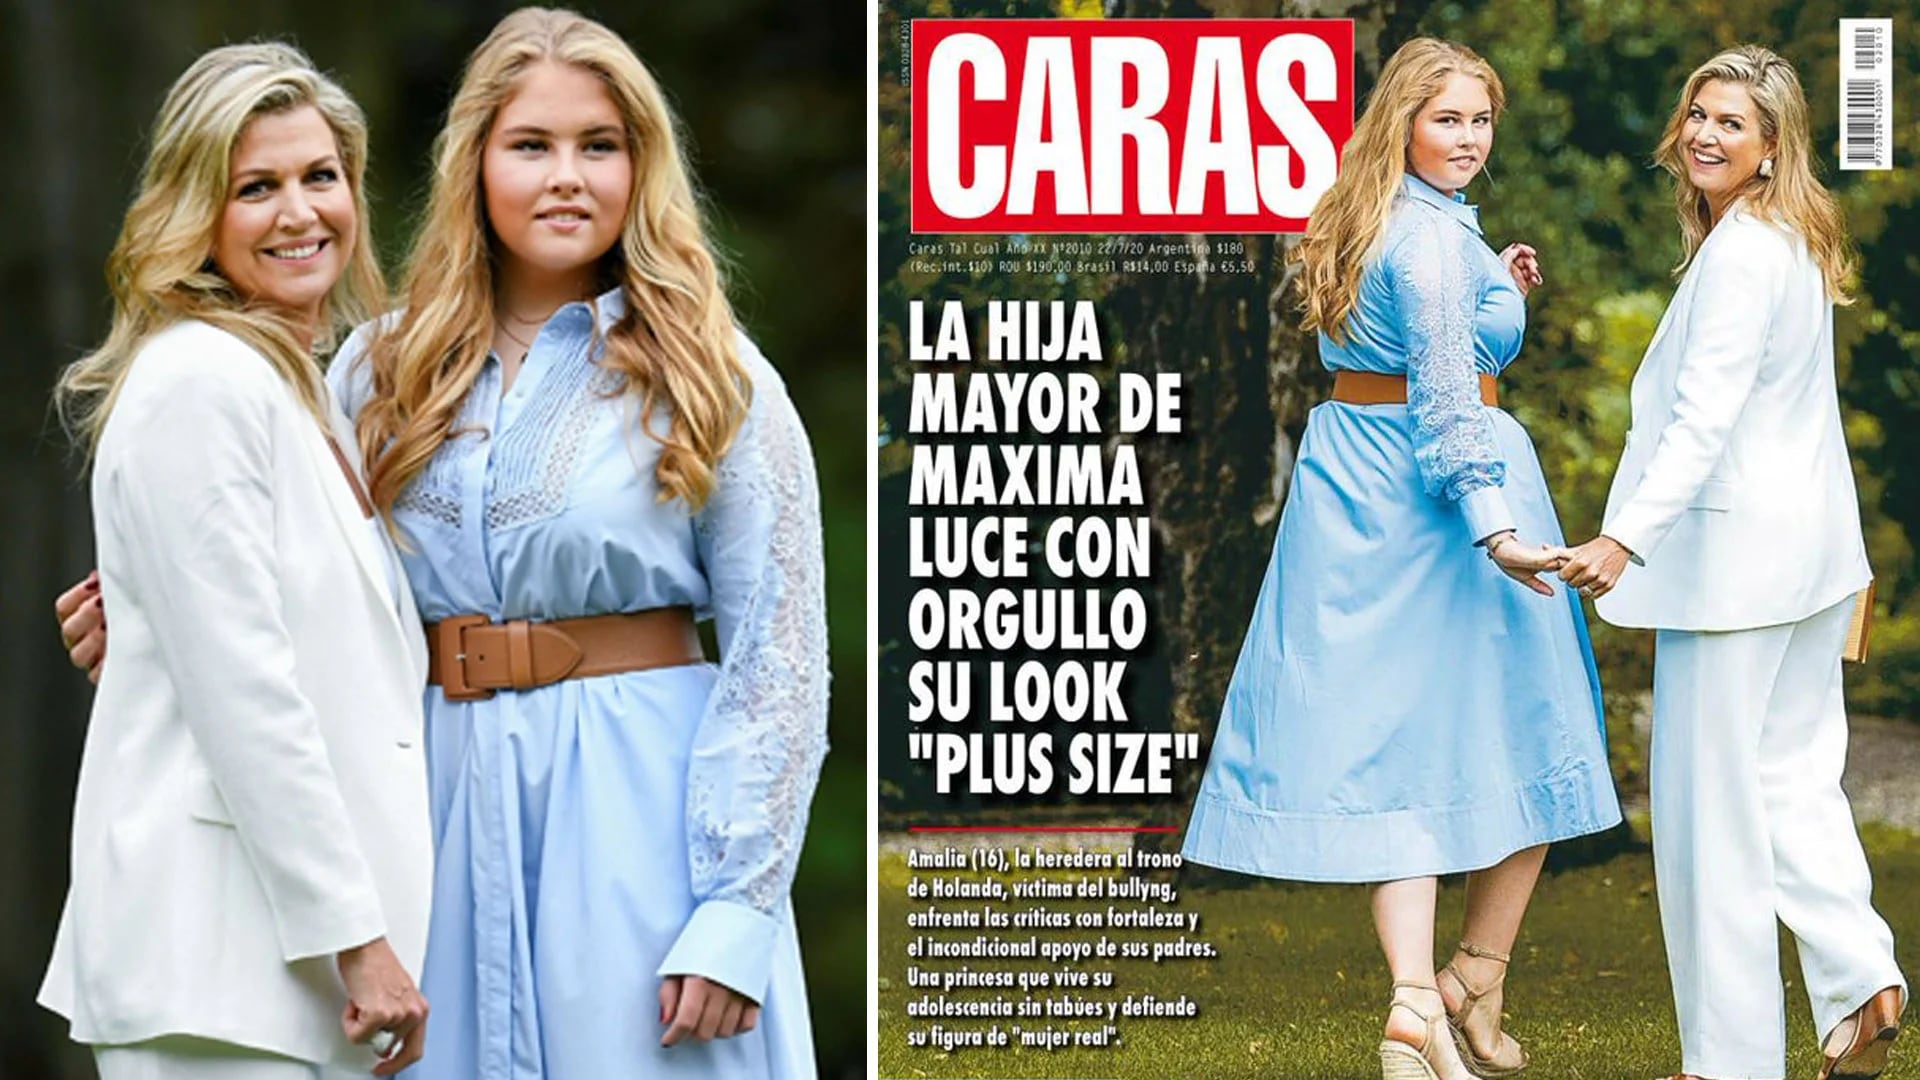 Fuertes críticas a la revista Caras por el título de su portada con la hija de Máxima Zorreguieta